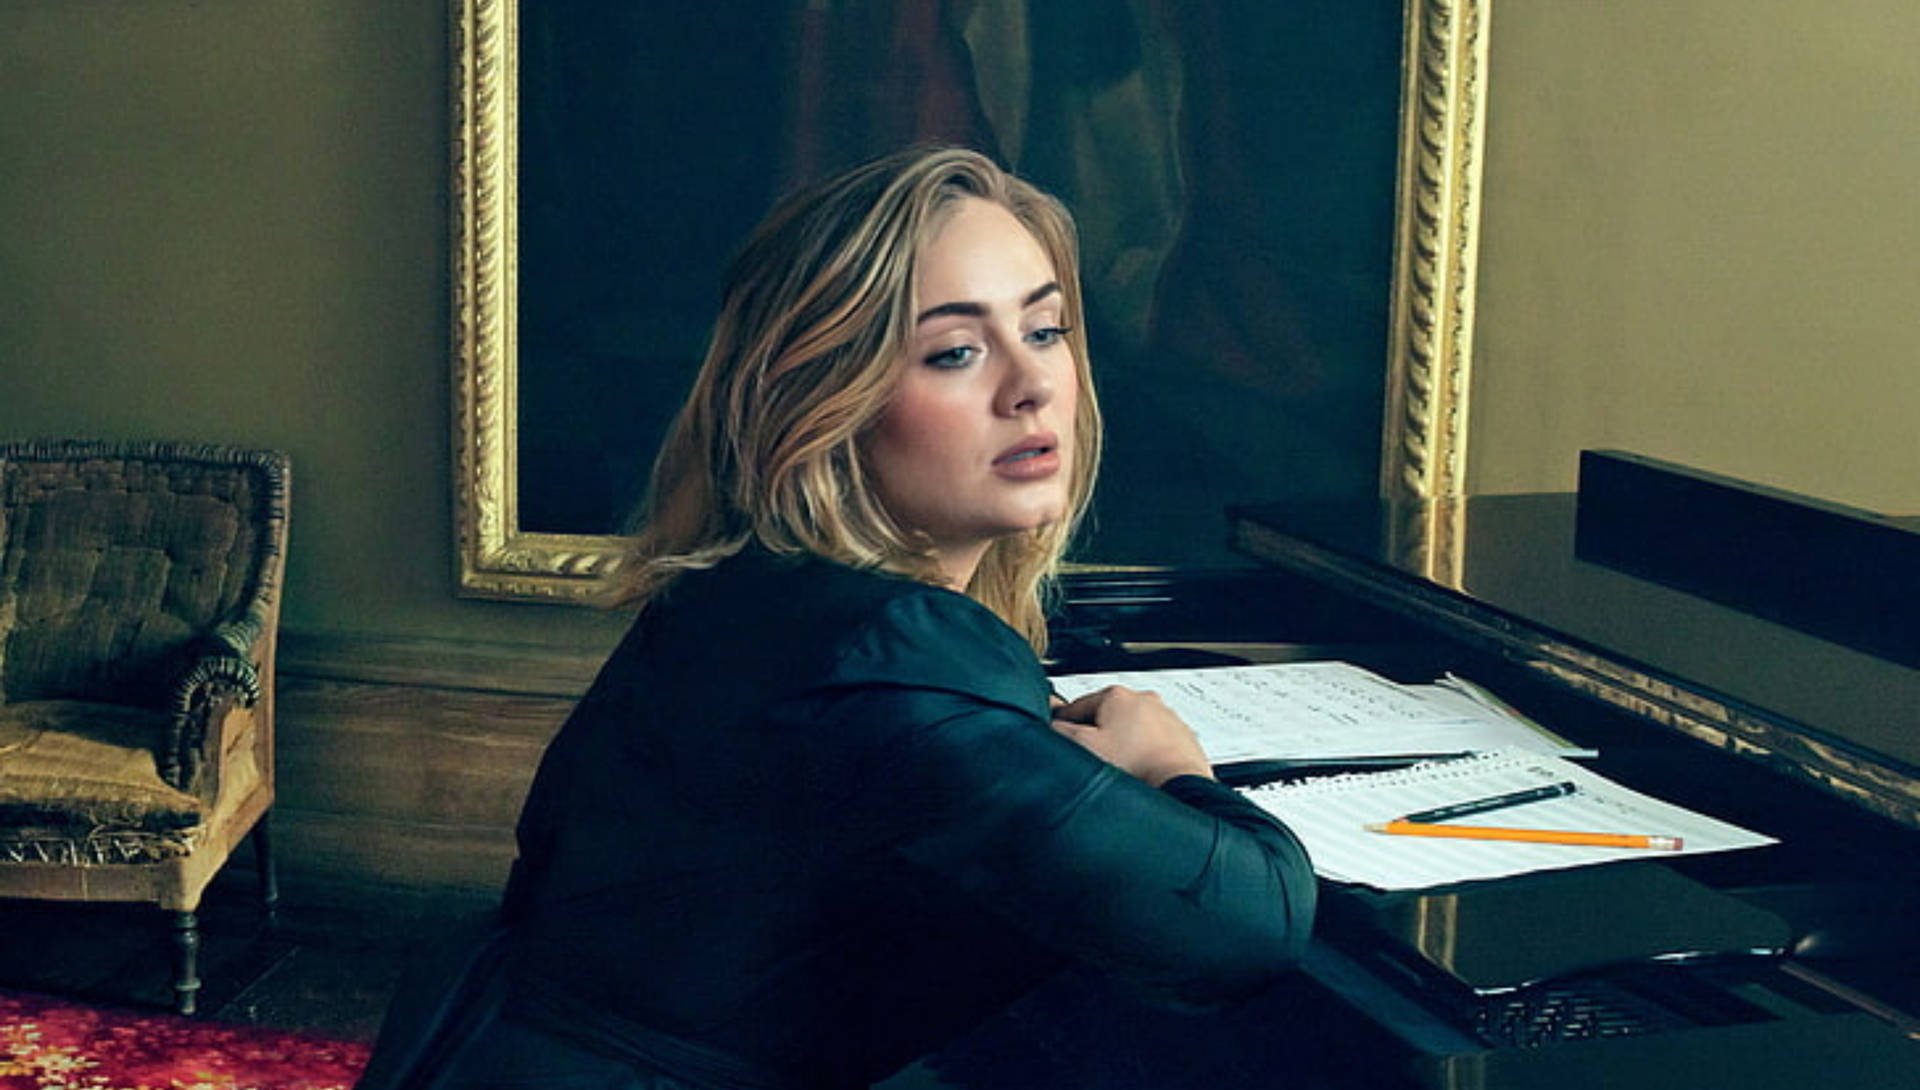 Adele Writing Lyrics Photoshoot Background